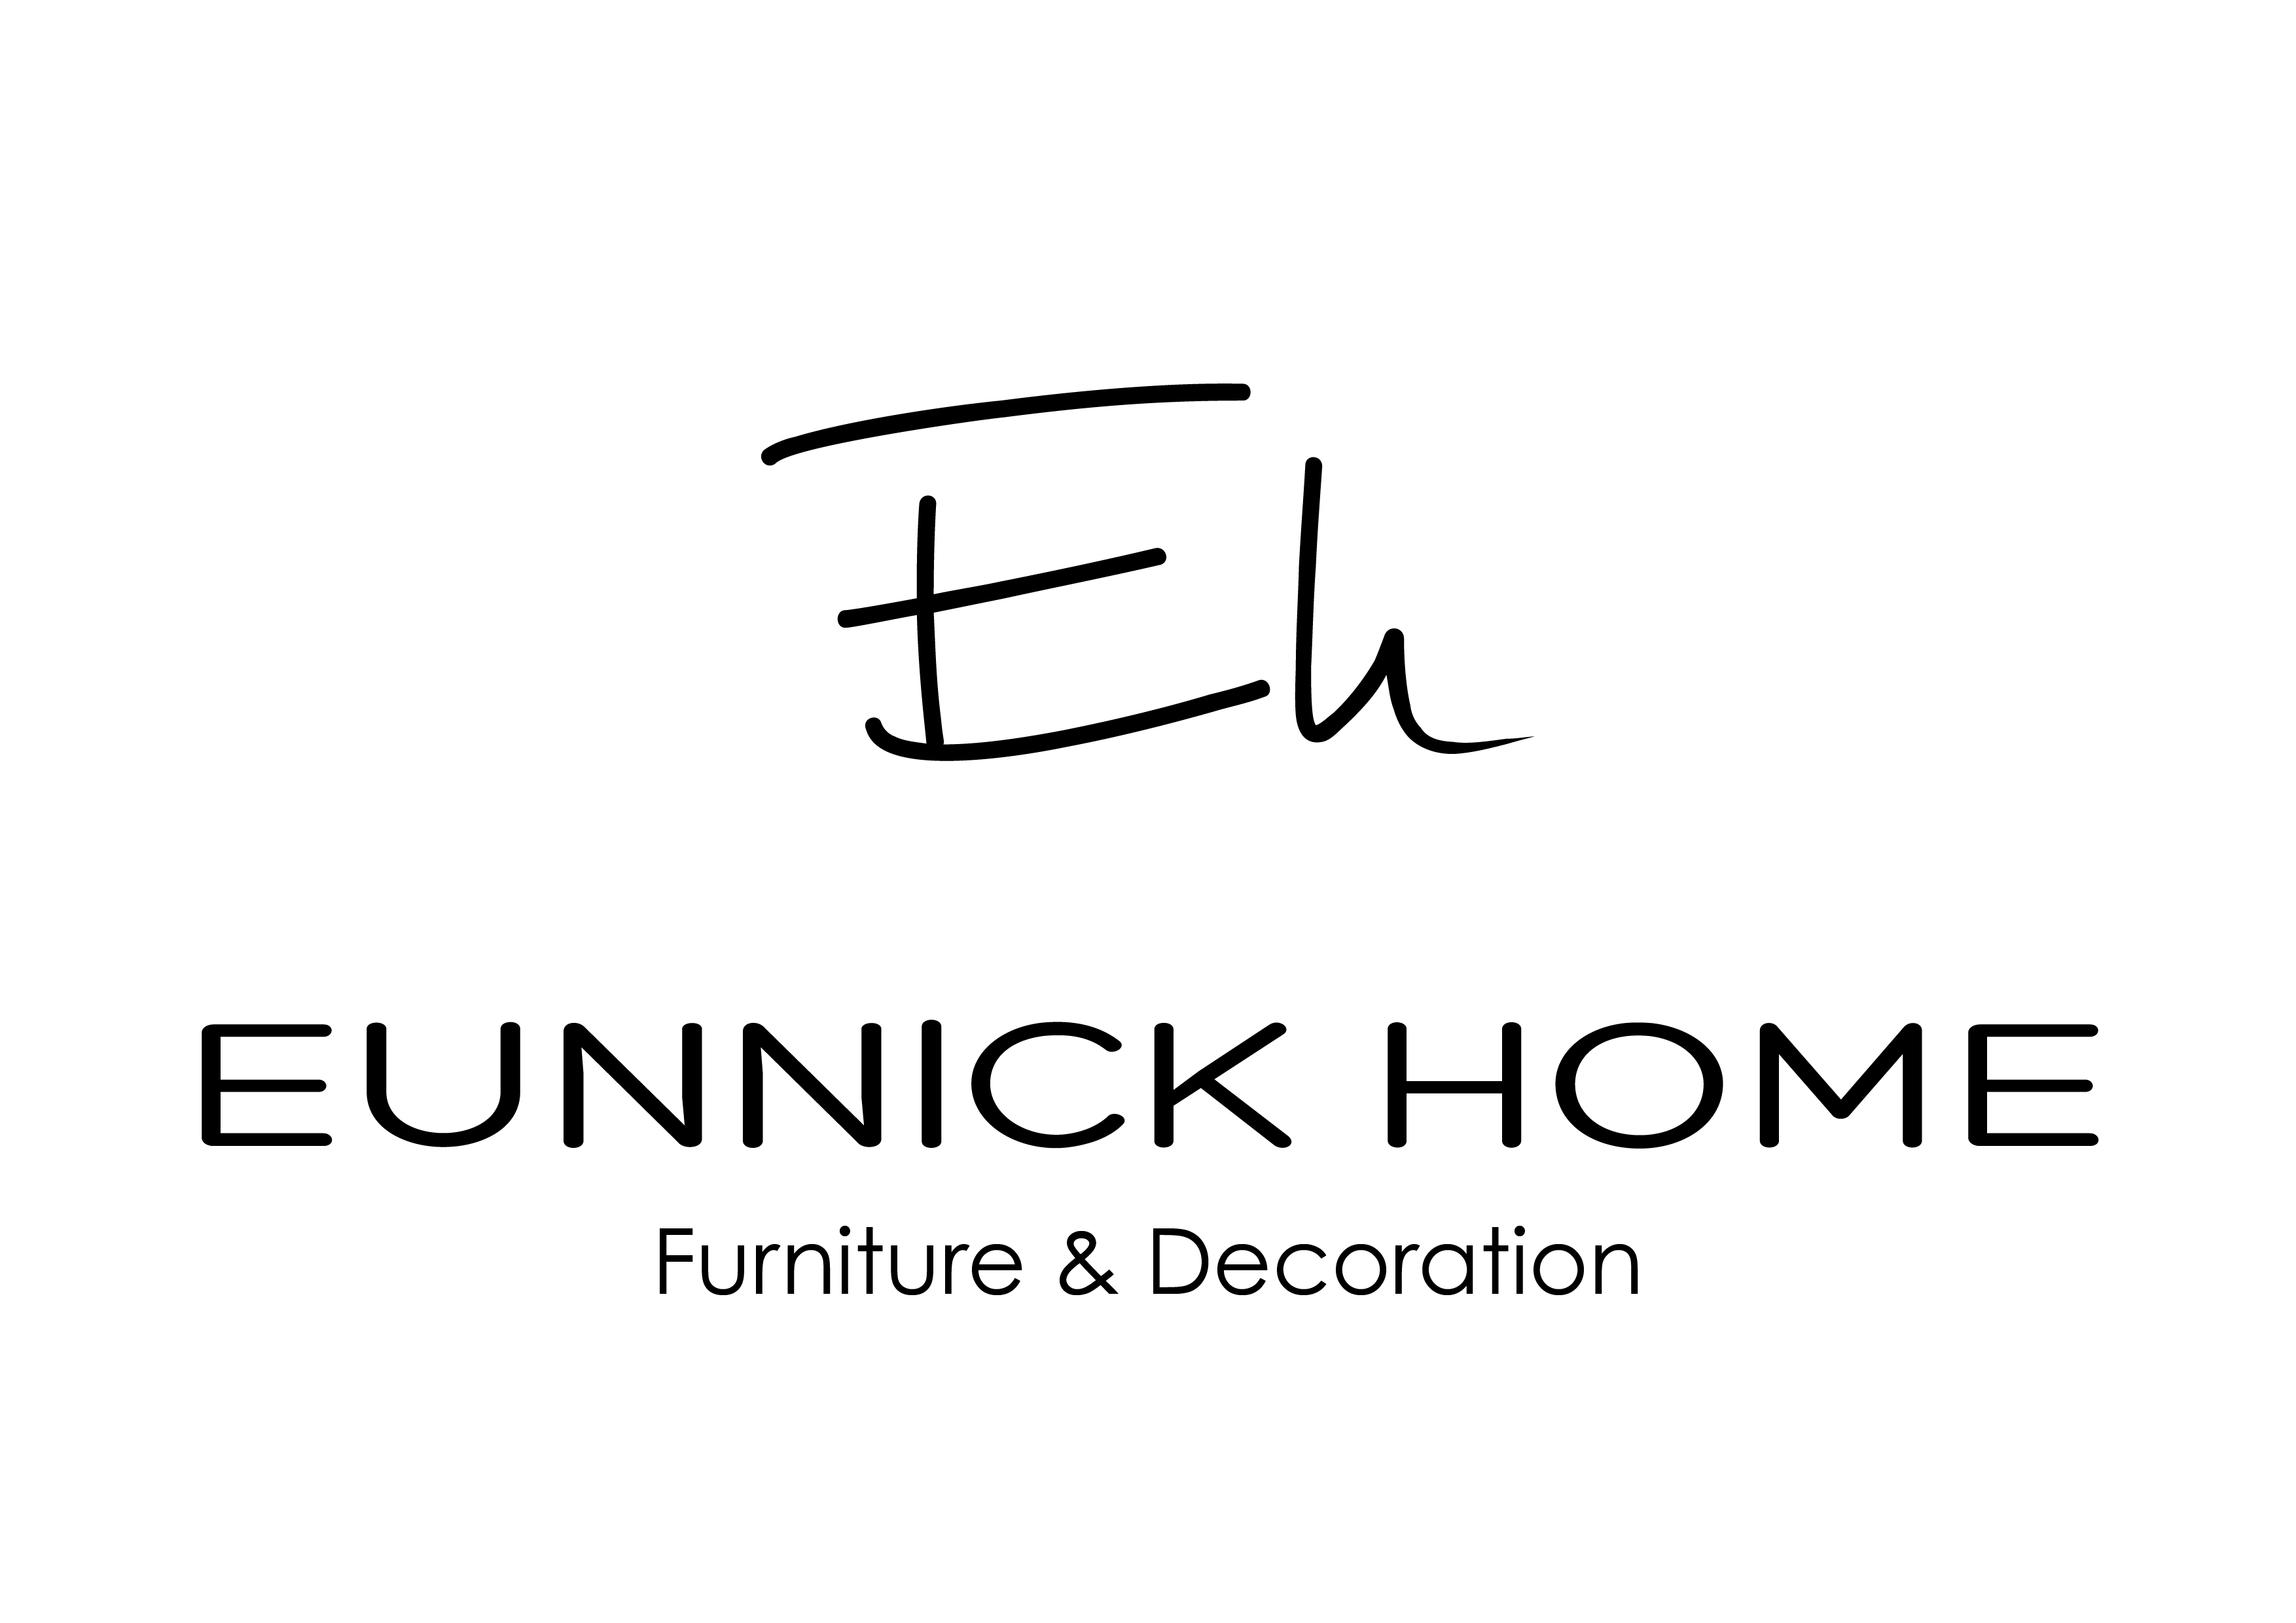 Eunnick Home